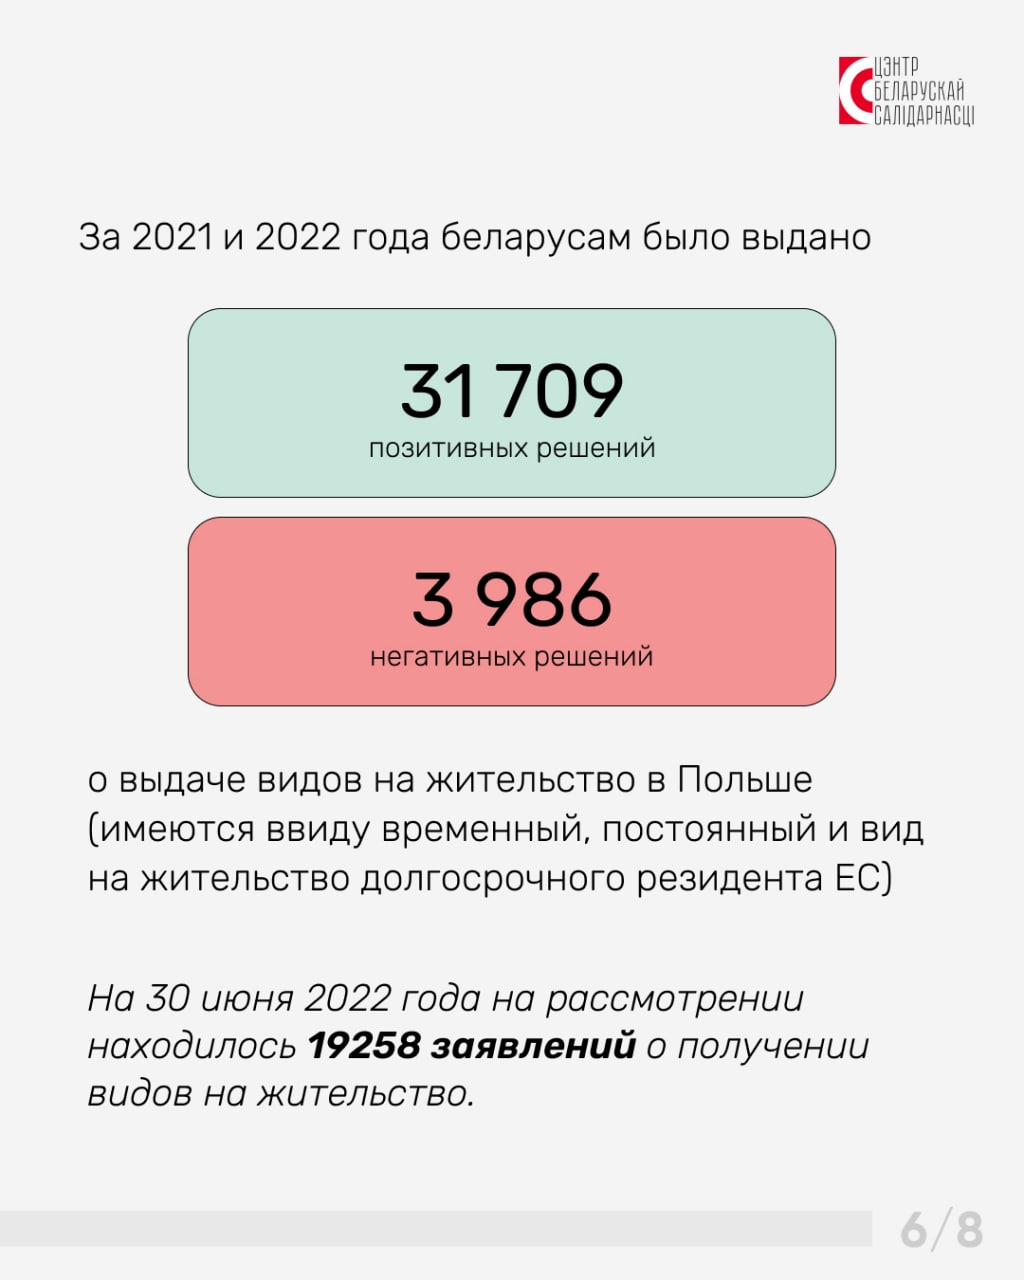 В Польше постоянно проживает более 52 тысяч беларусов